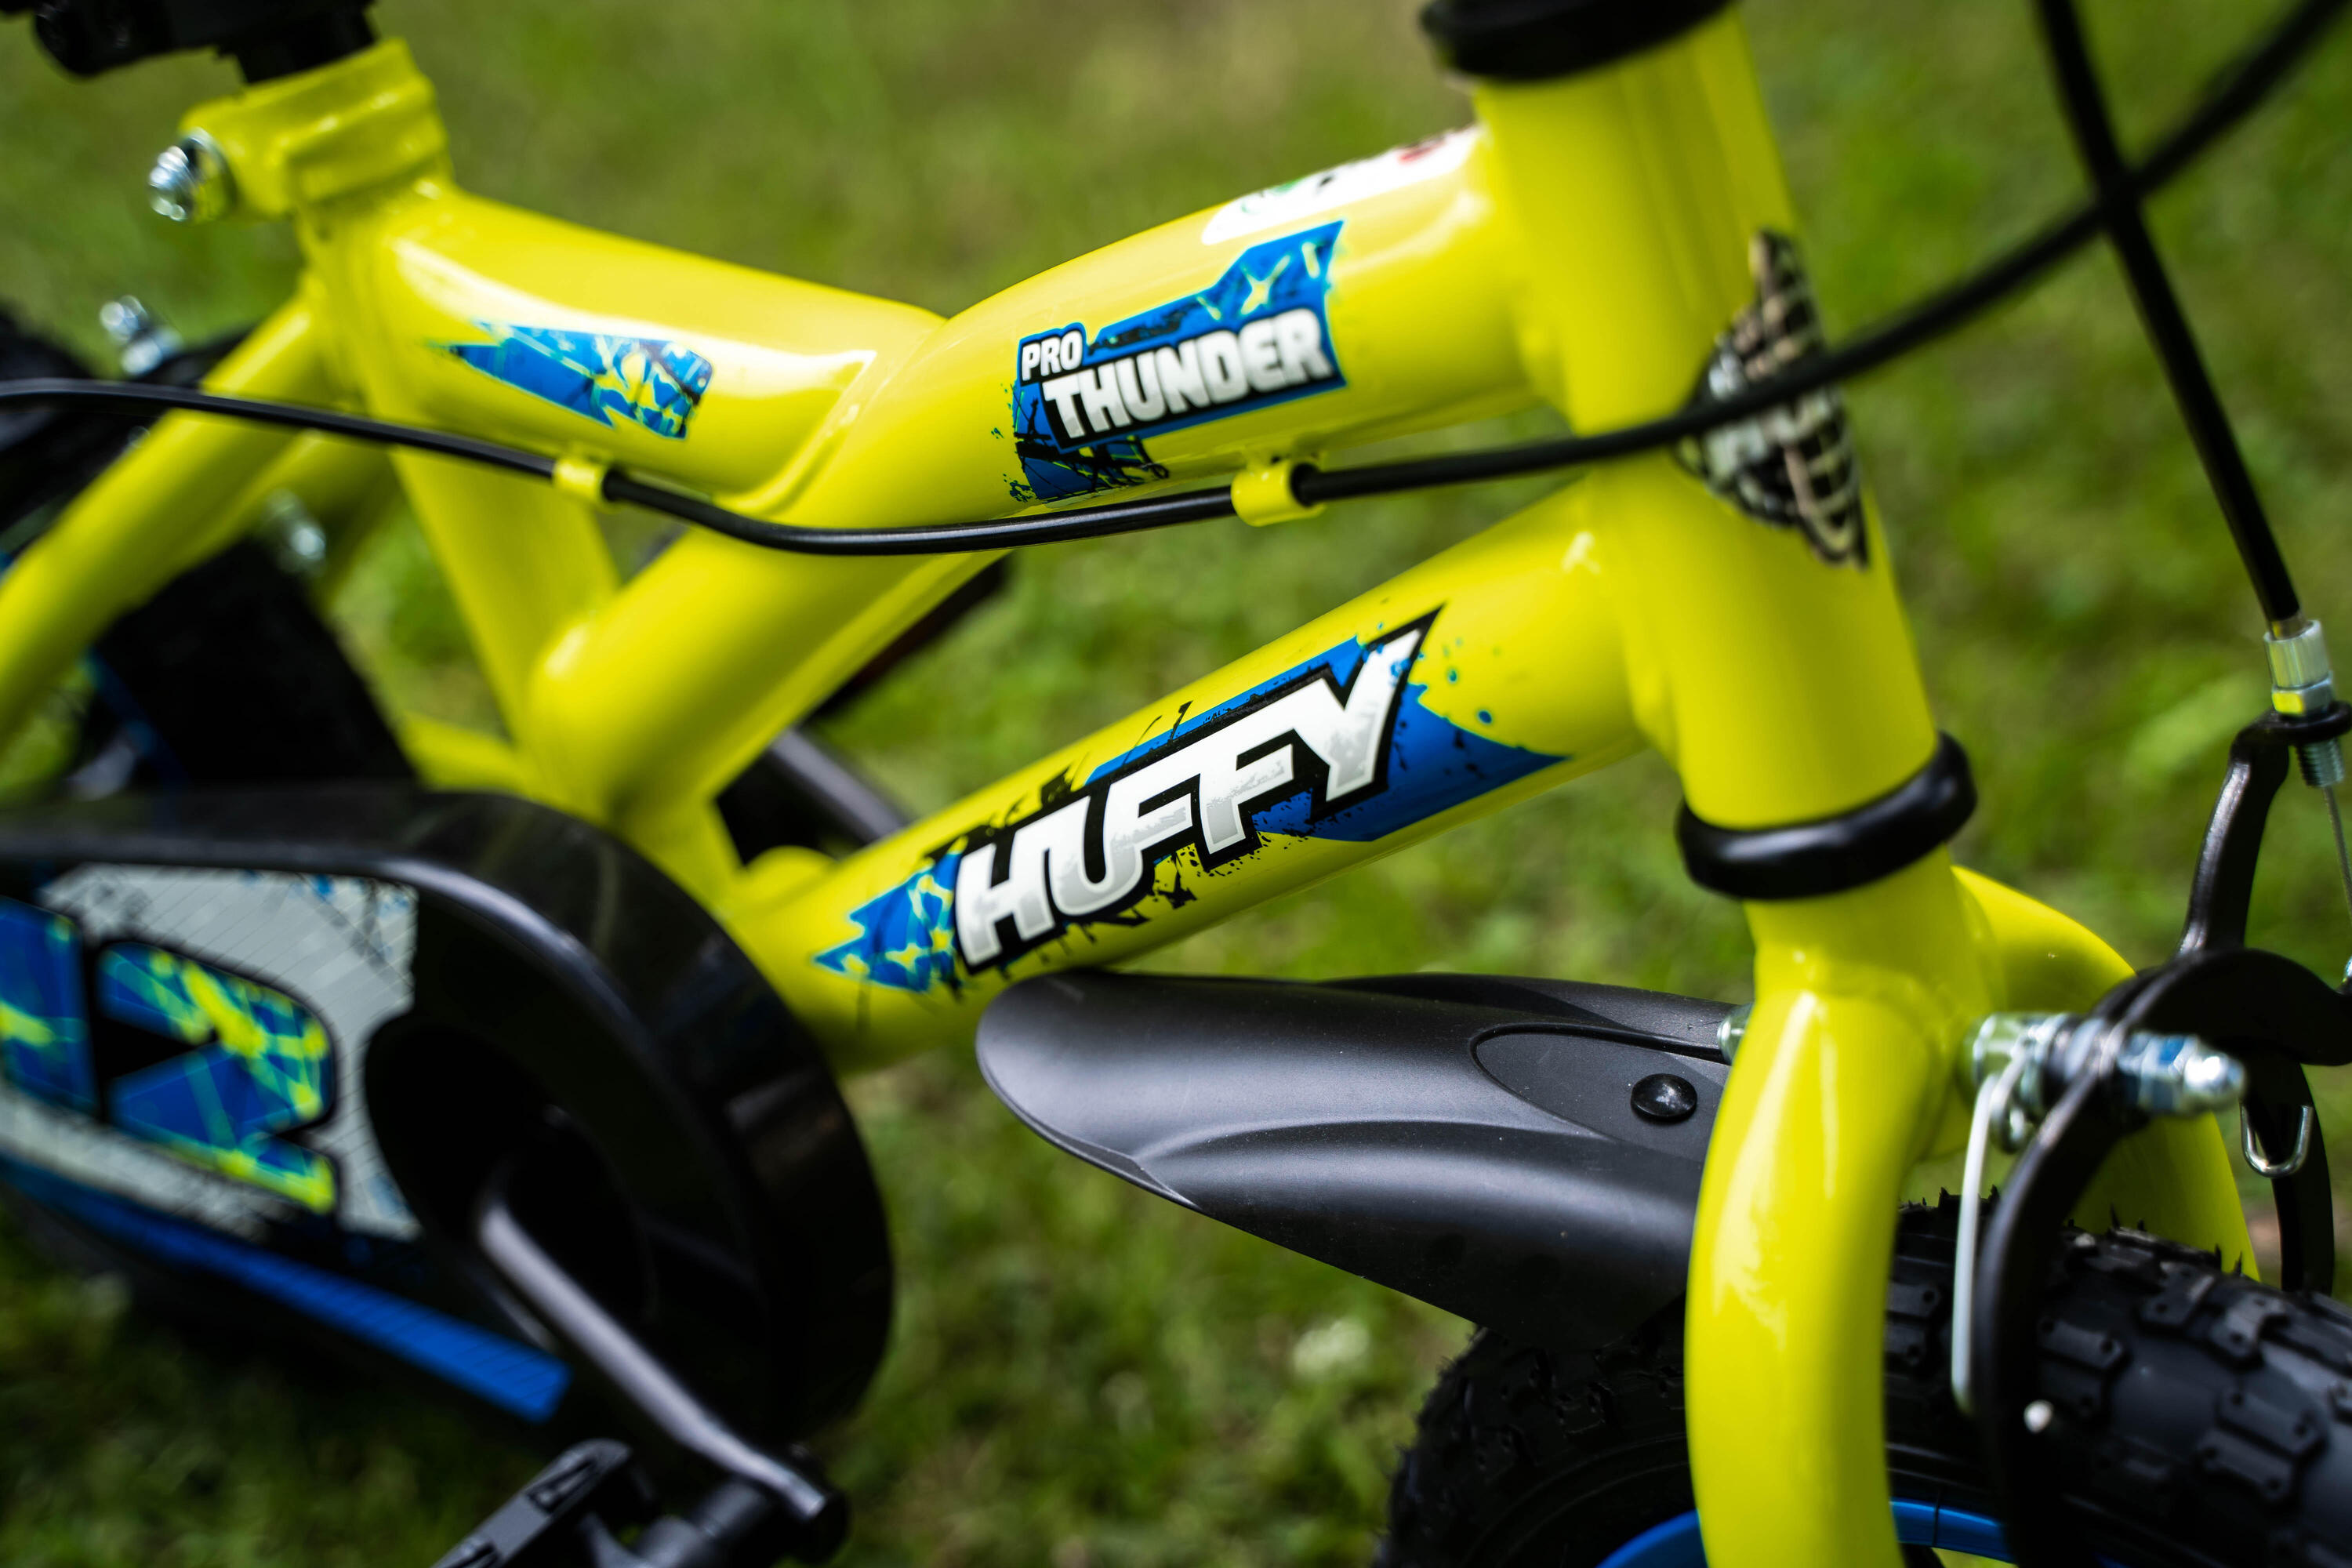 Huffy Pro Thunder 12" Yellow BMX Bike Kids 3-5yrs 7/7